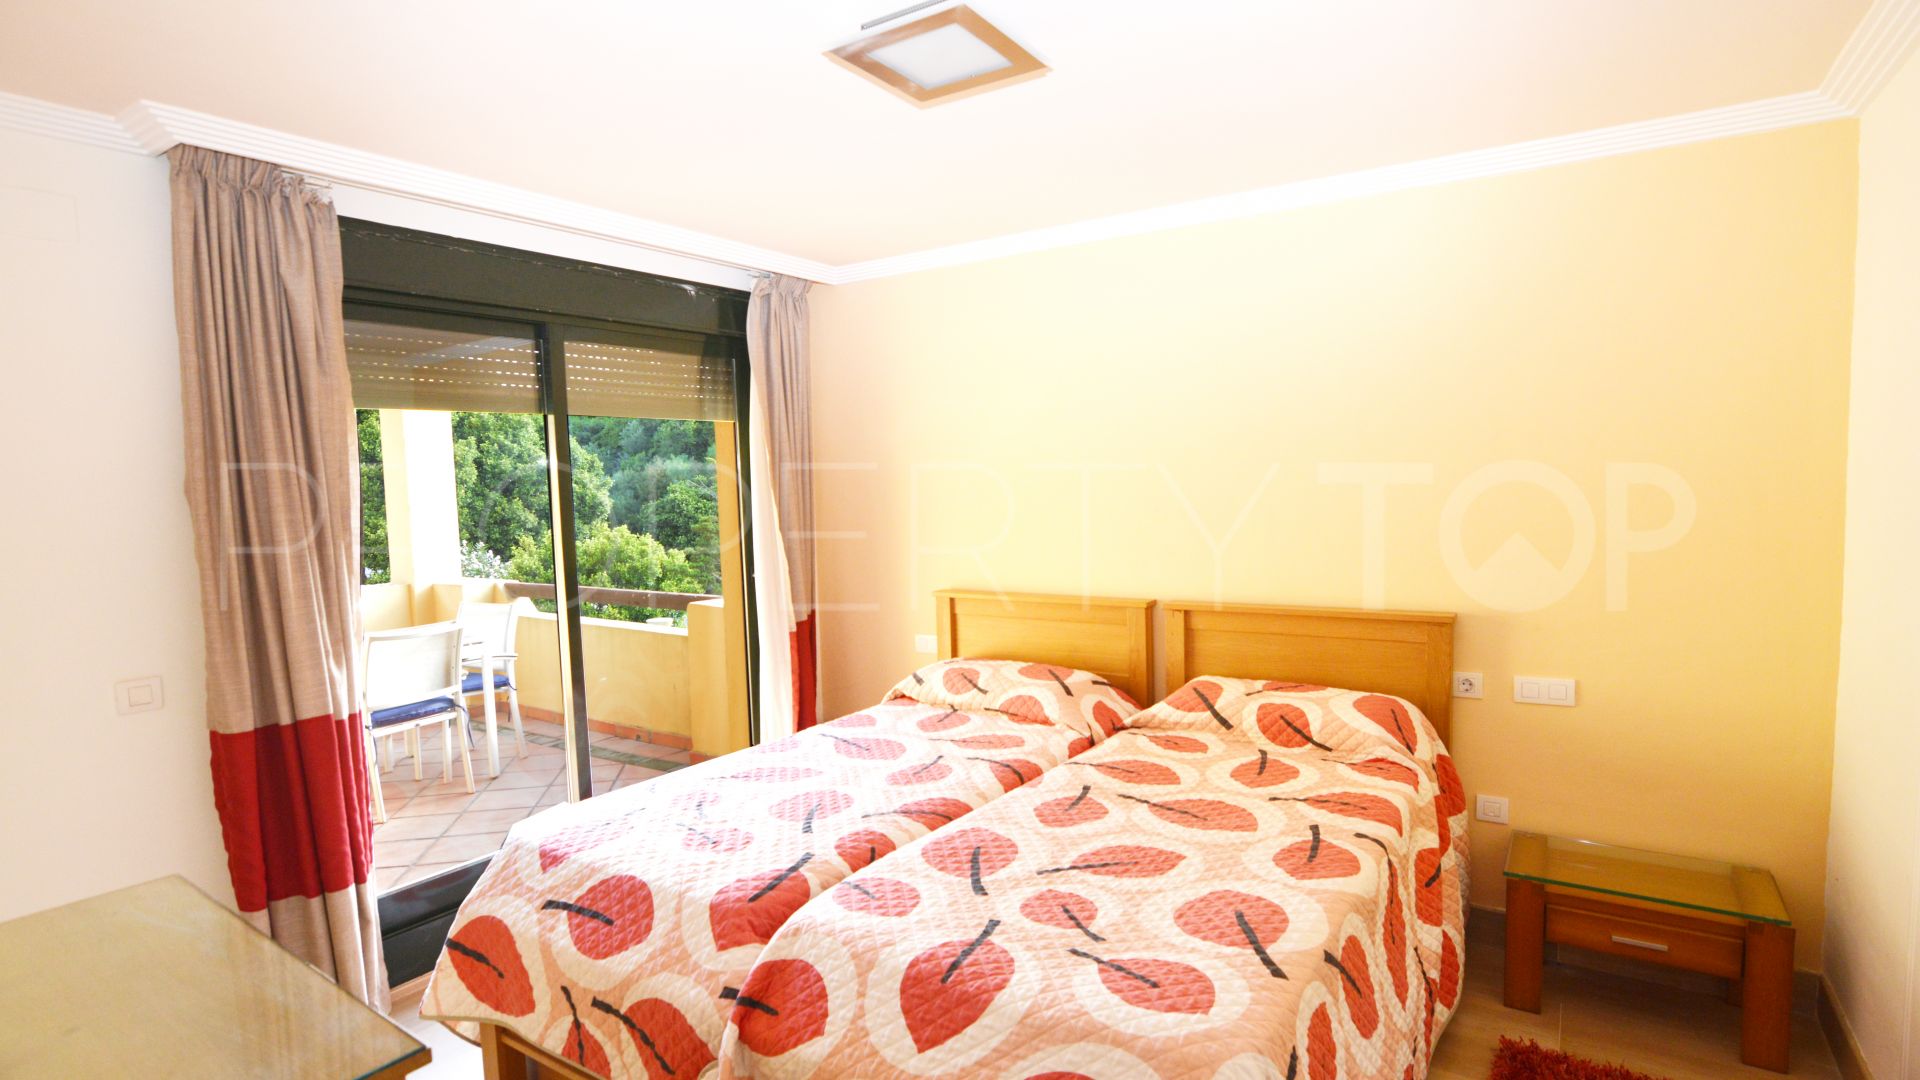 Comprar apartamento en Los Gazules de Almenara con 2 dormitorios